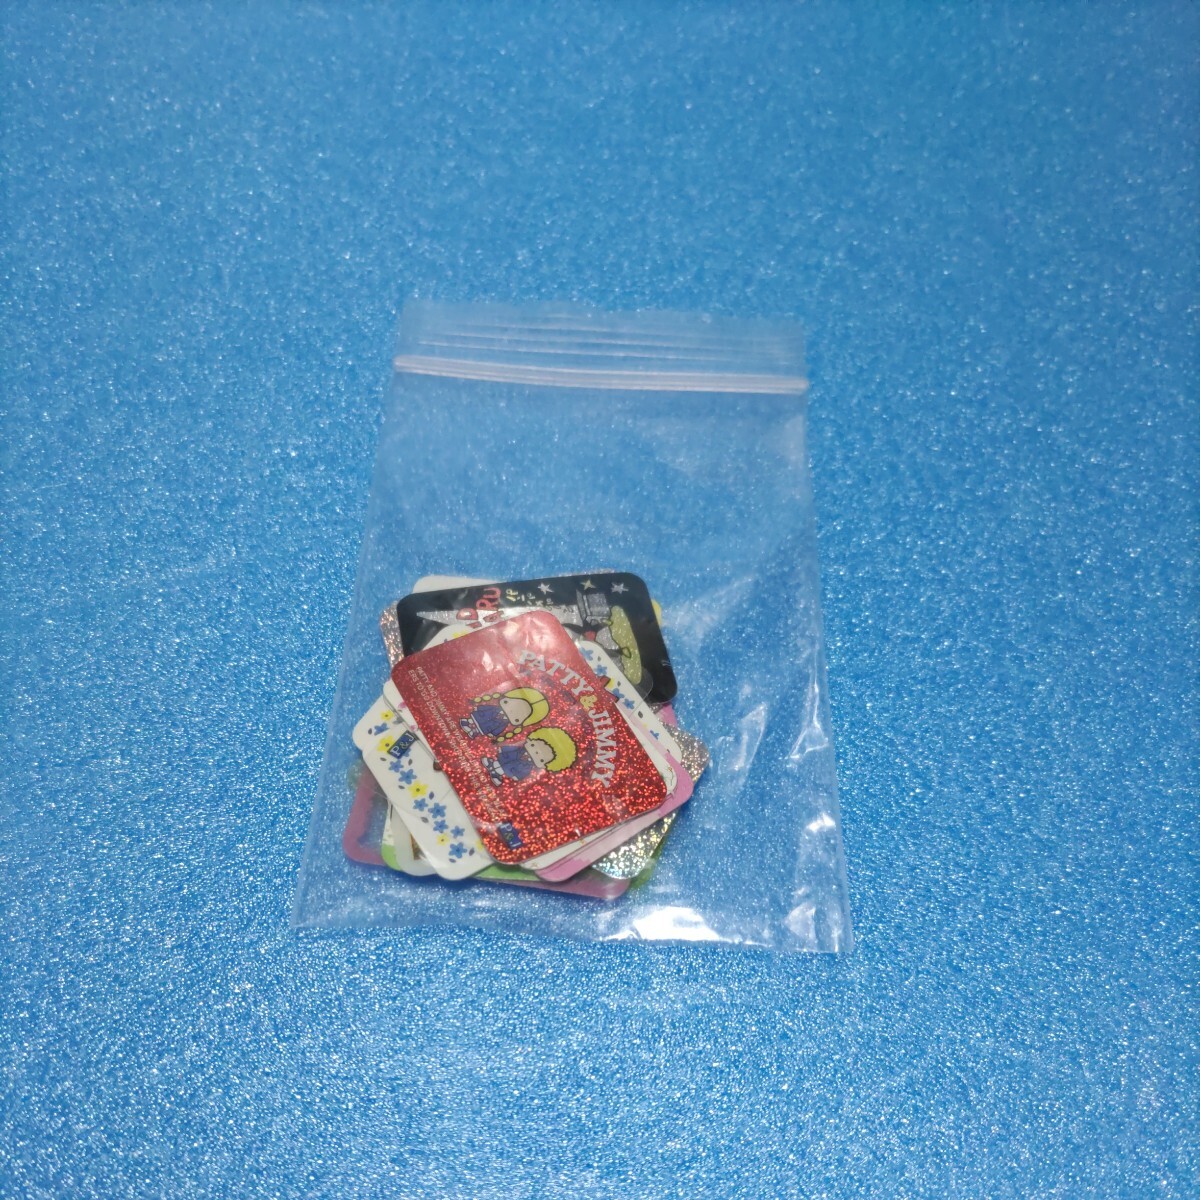  Hello Kitty goods ( rose seal, seal 7 sheets, memo pad 2 kind, memory pad, extra. seal ) Sanrio 